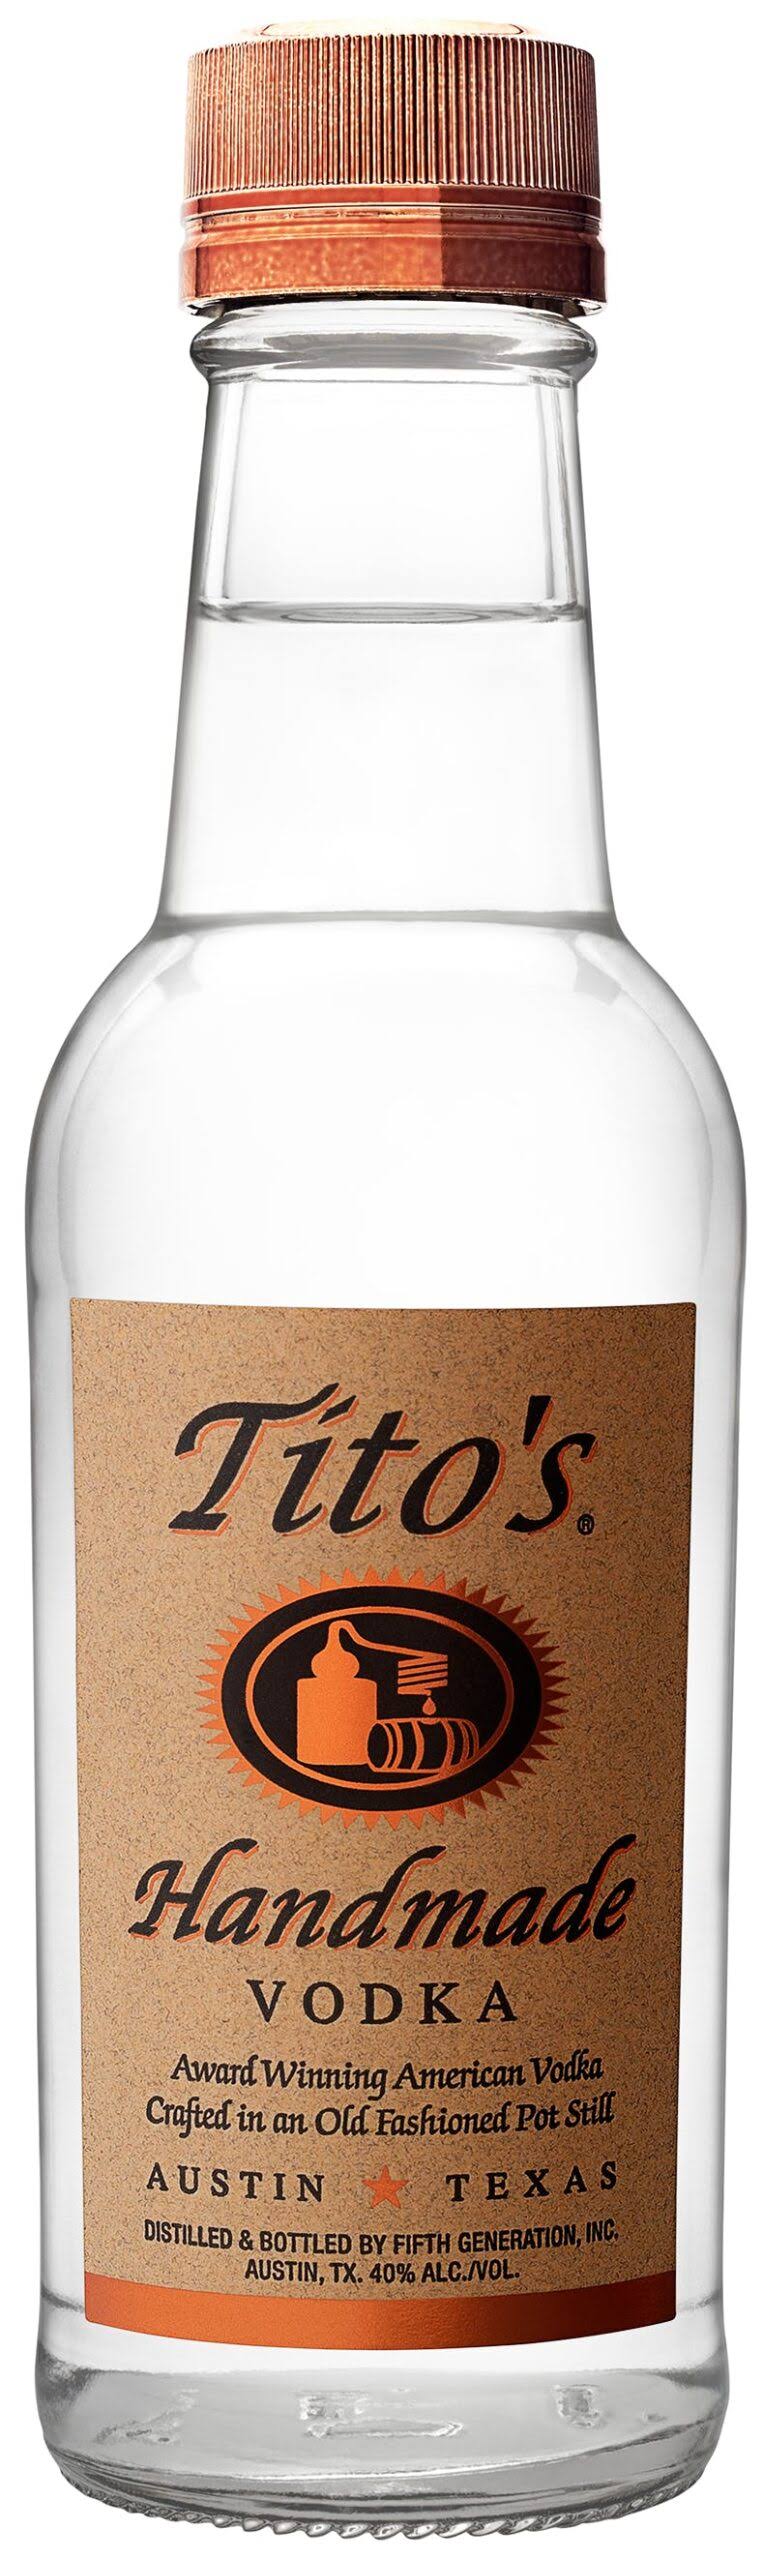 Tito's Handmade Vodka - 200 ml bottle